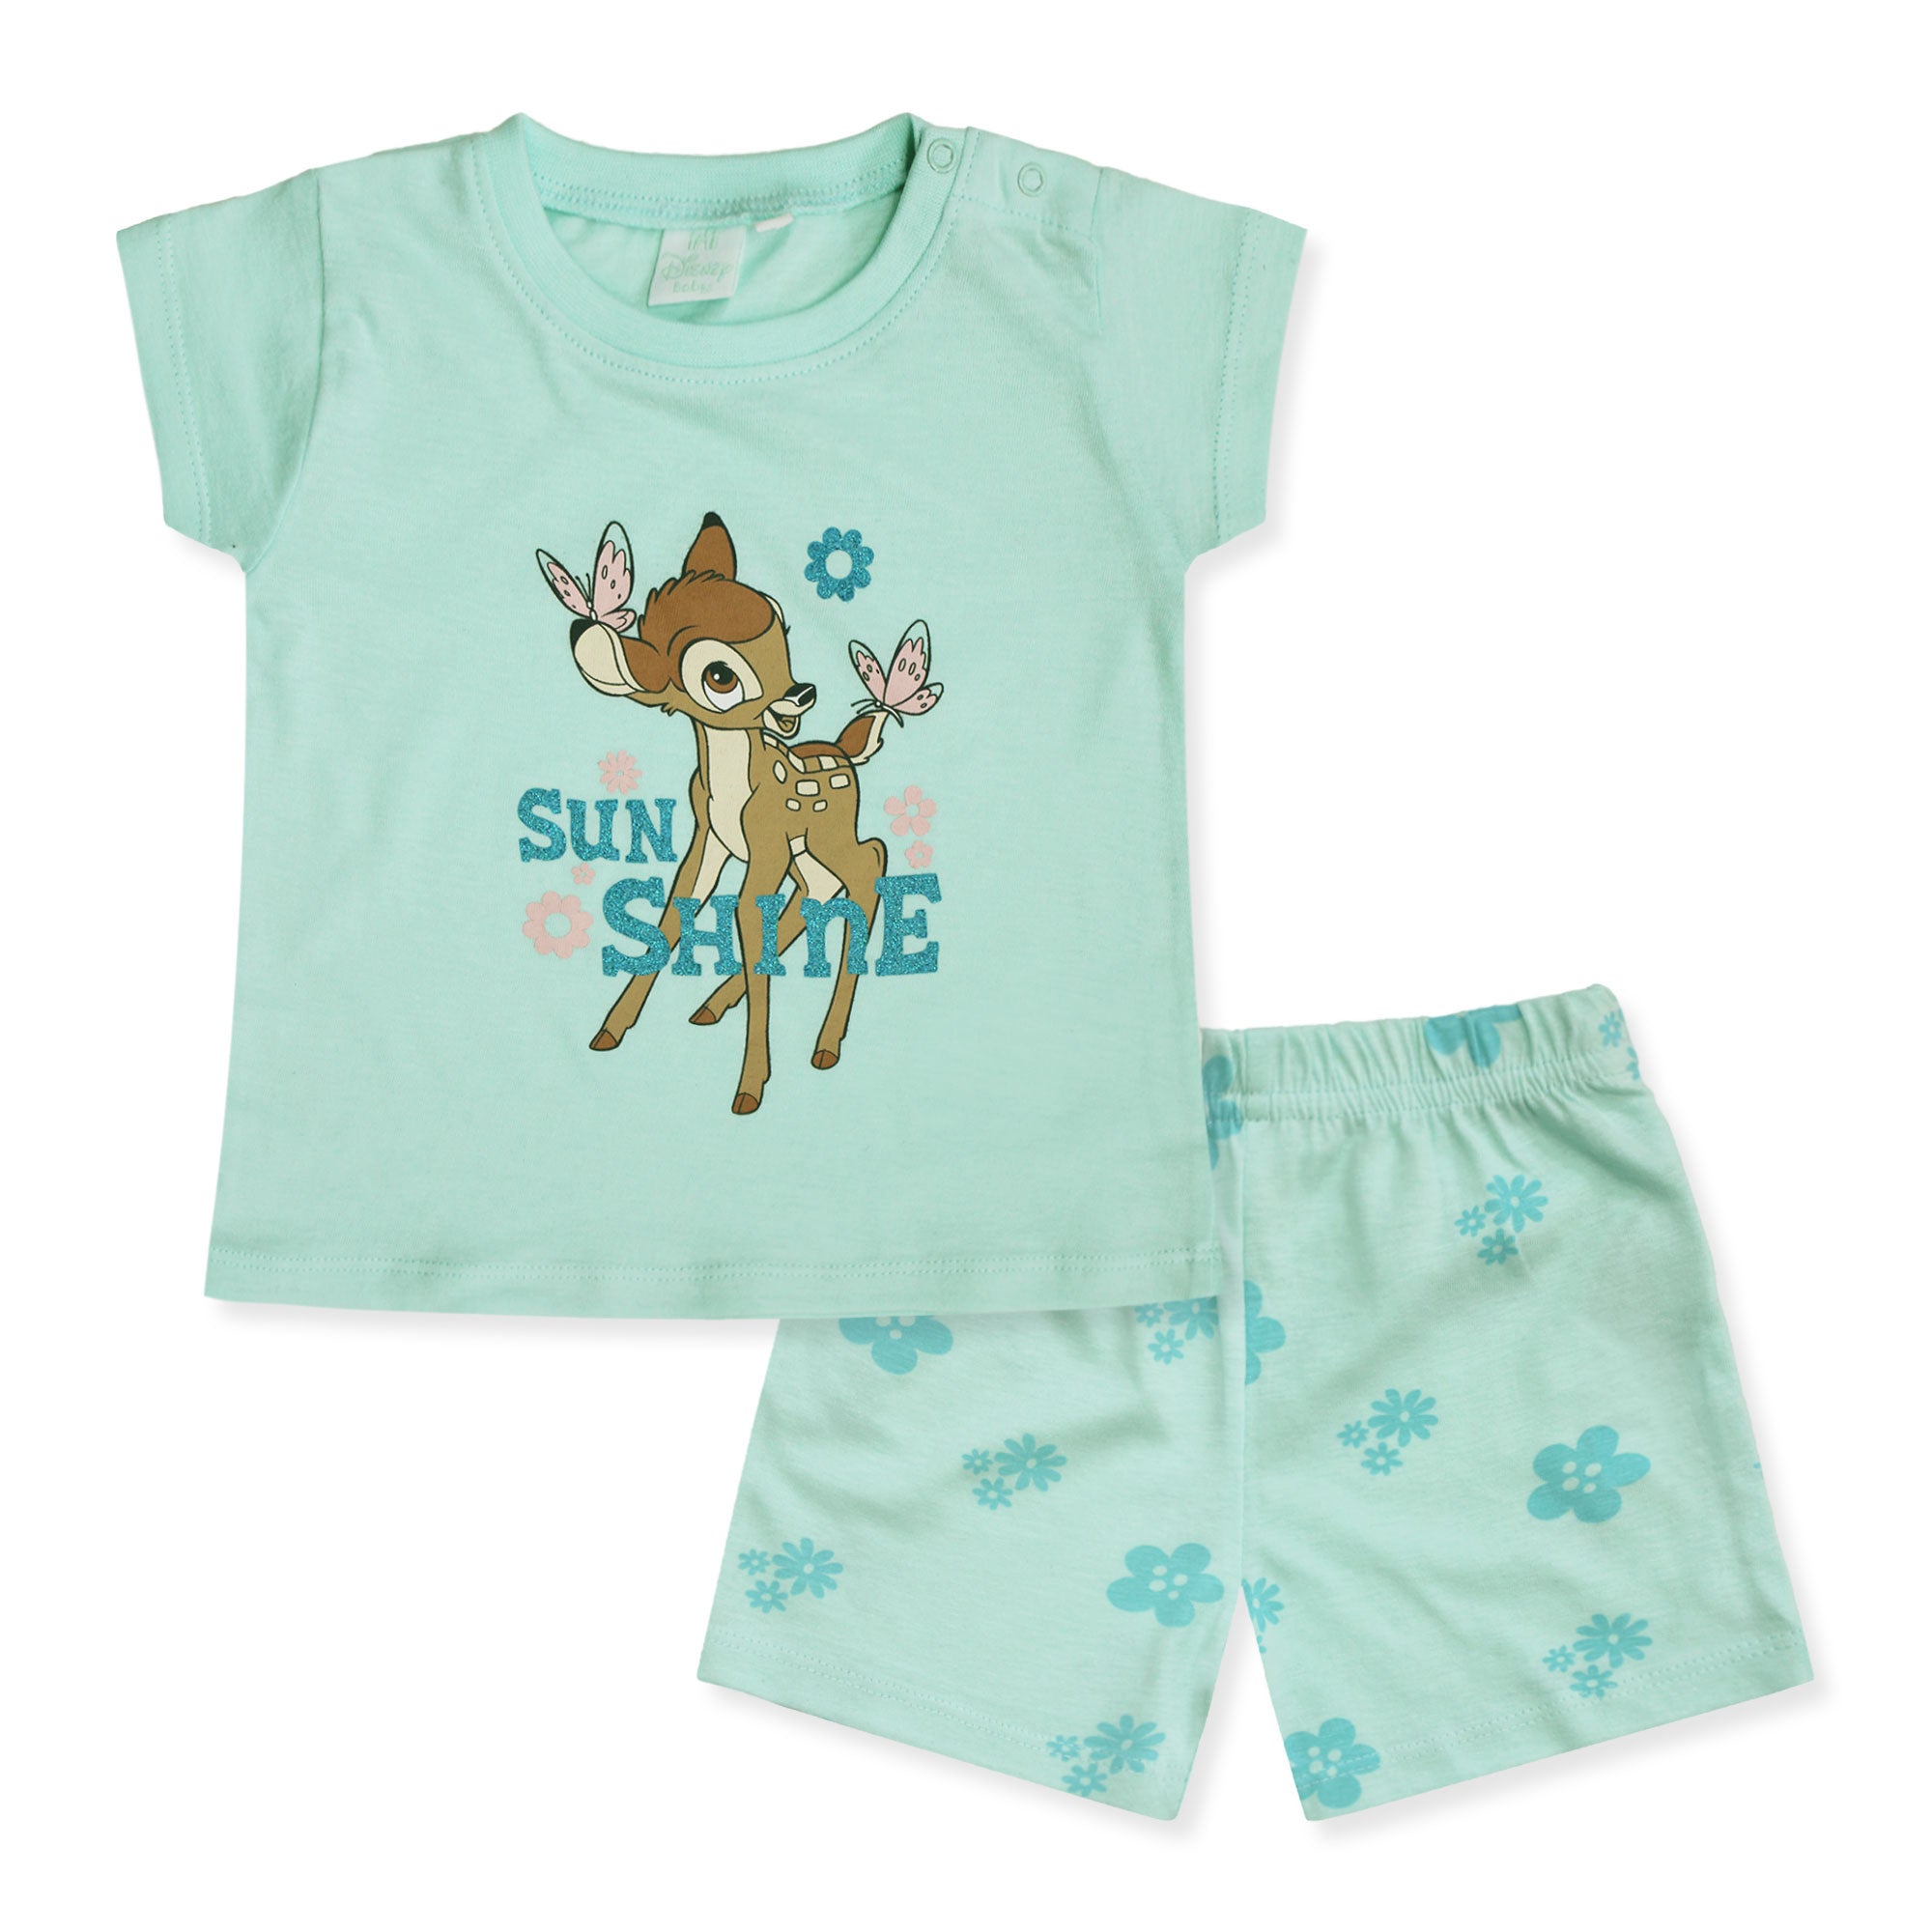 Completo Disney Bambi in cotone estivo maglia neonato bambina 6583